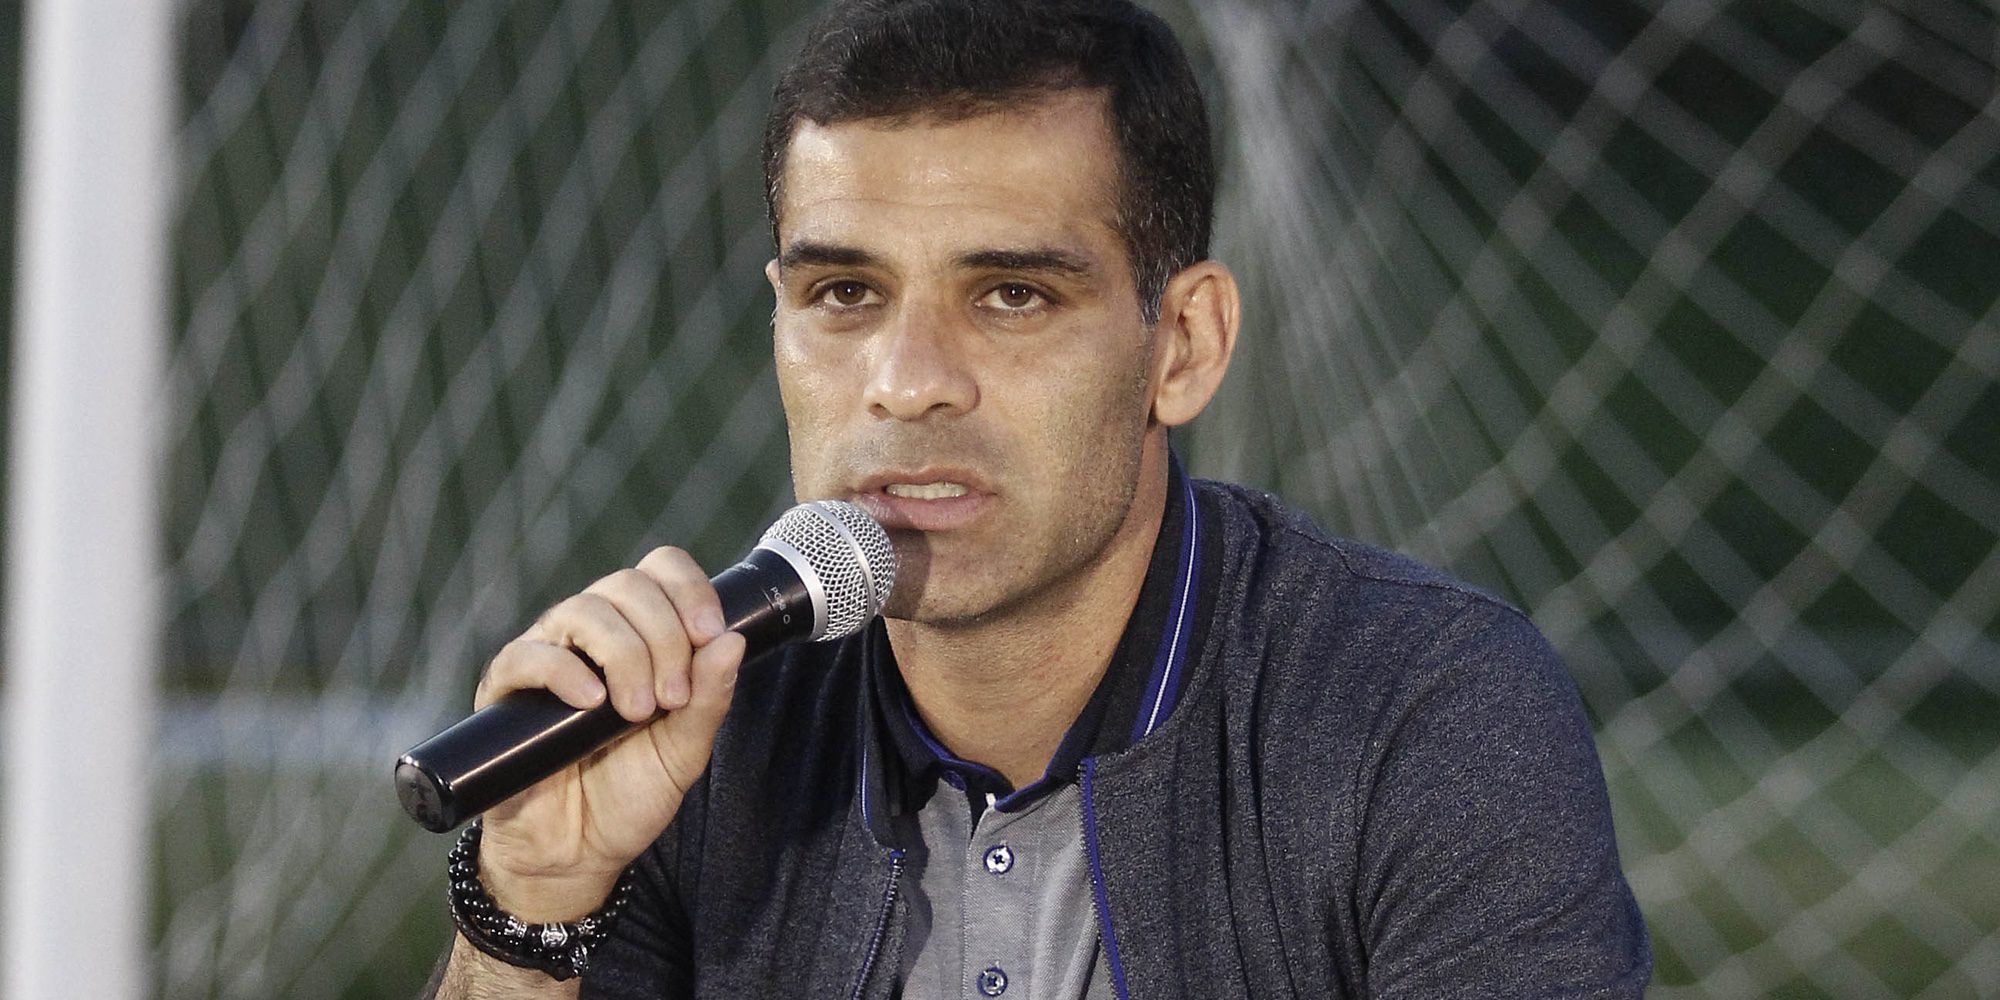 El futbolista mexicano Rafa Márquez, vinculado a una red de narcotráfico